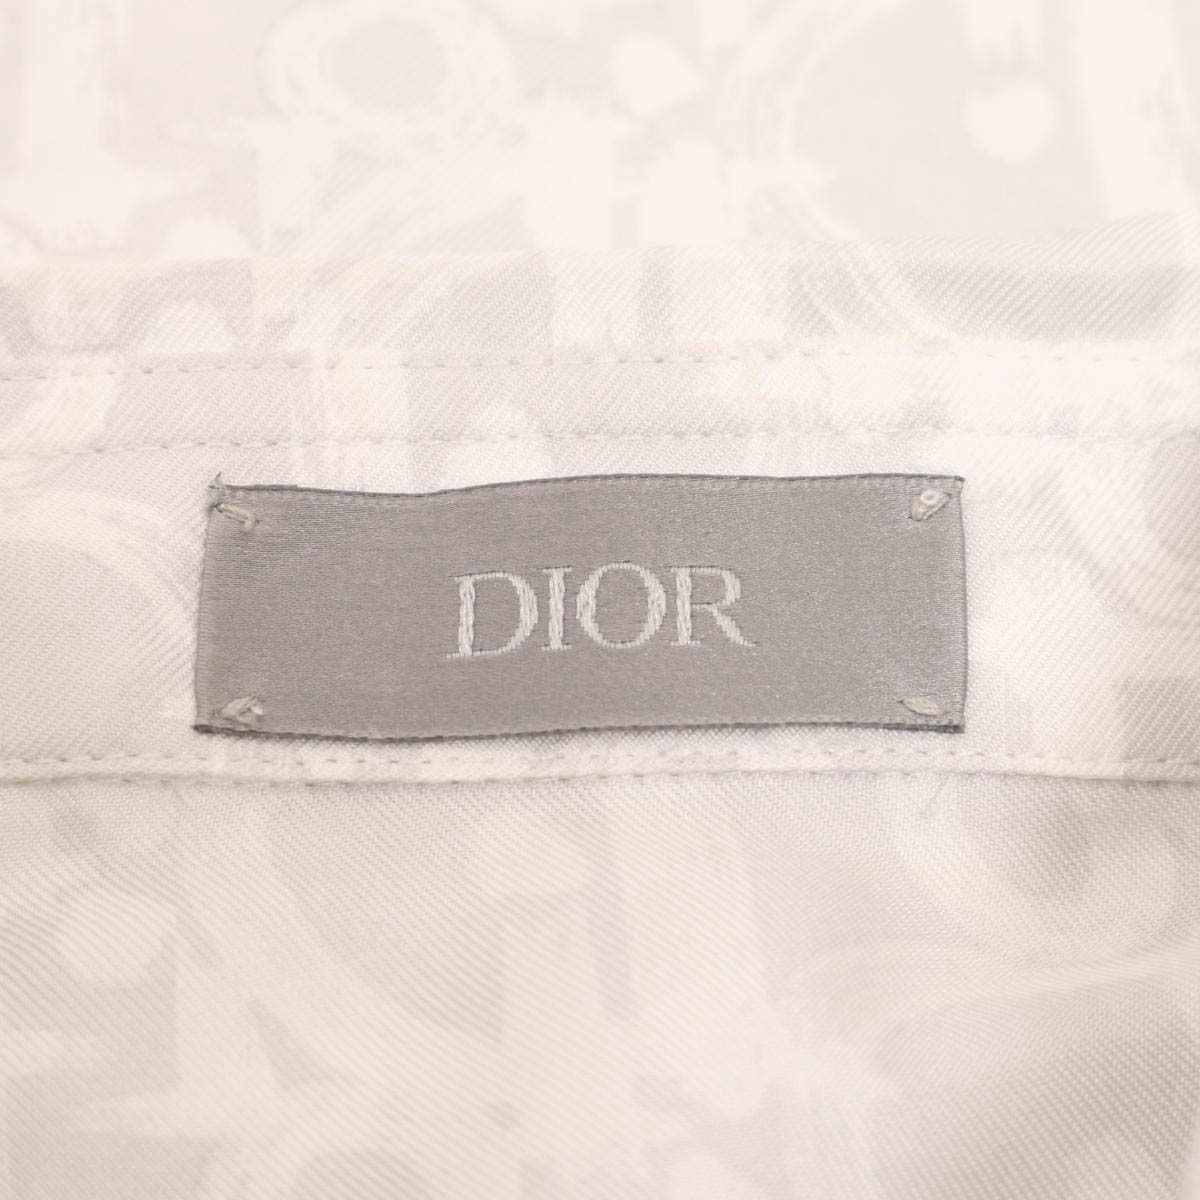 ディオール オブリーク シルク 長袖シャツ 013C502A5141 メンズ グレー系 Dior【中古】 【アパレル・小物】